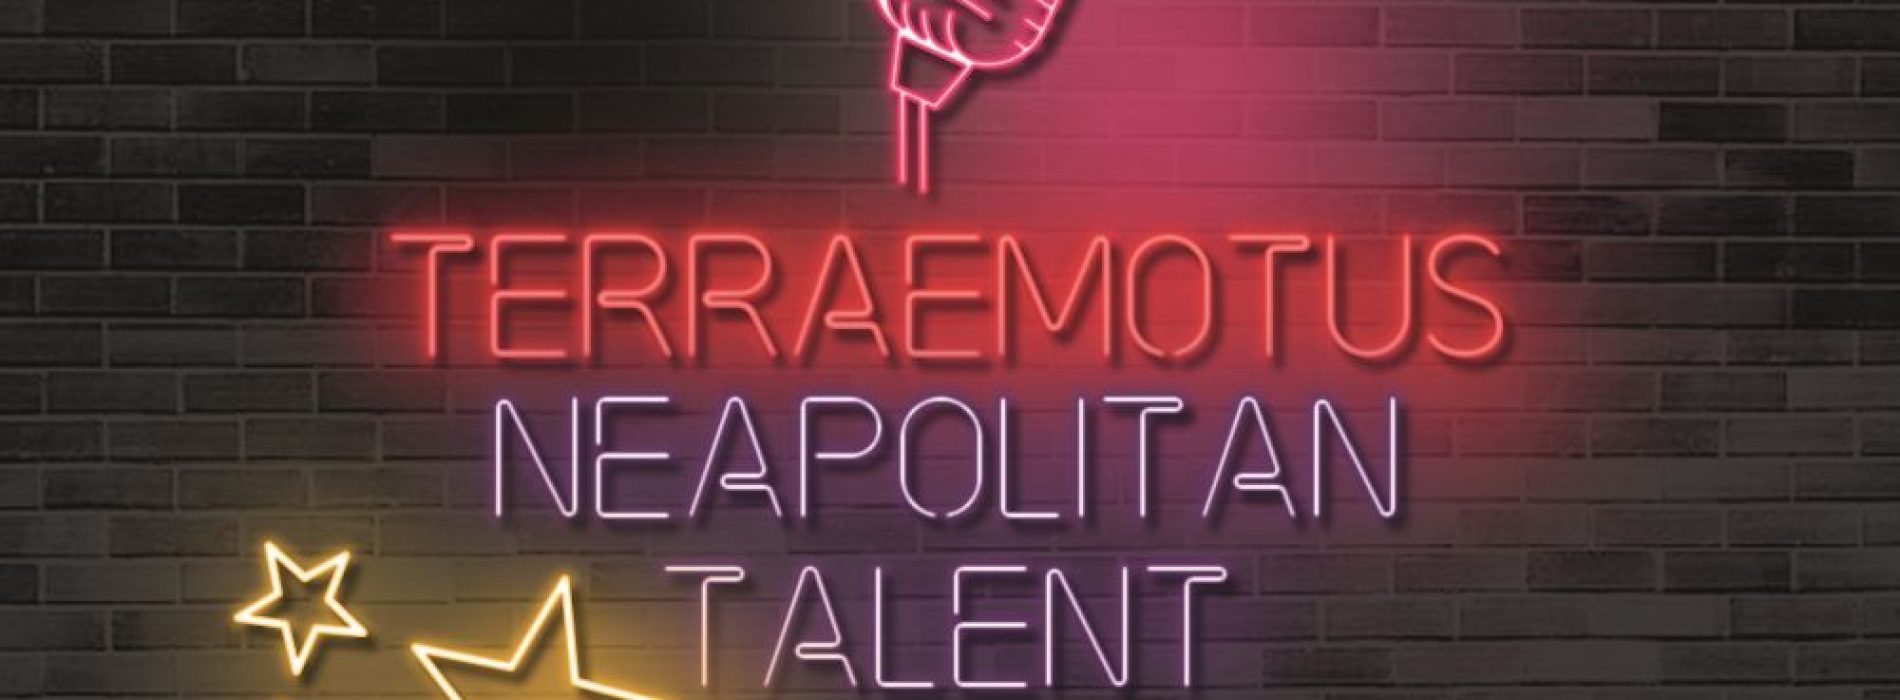 Terræmotus Neapolitan, nuova tappa per il contest dei talenti